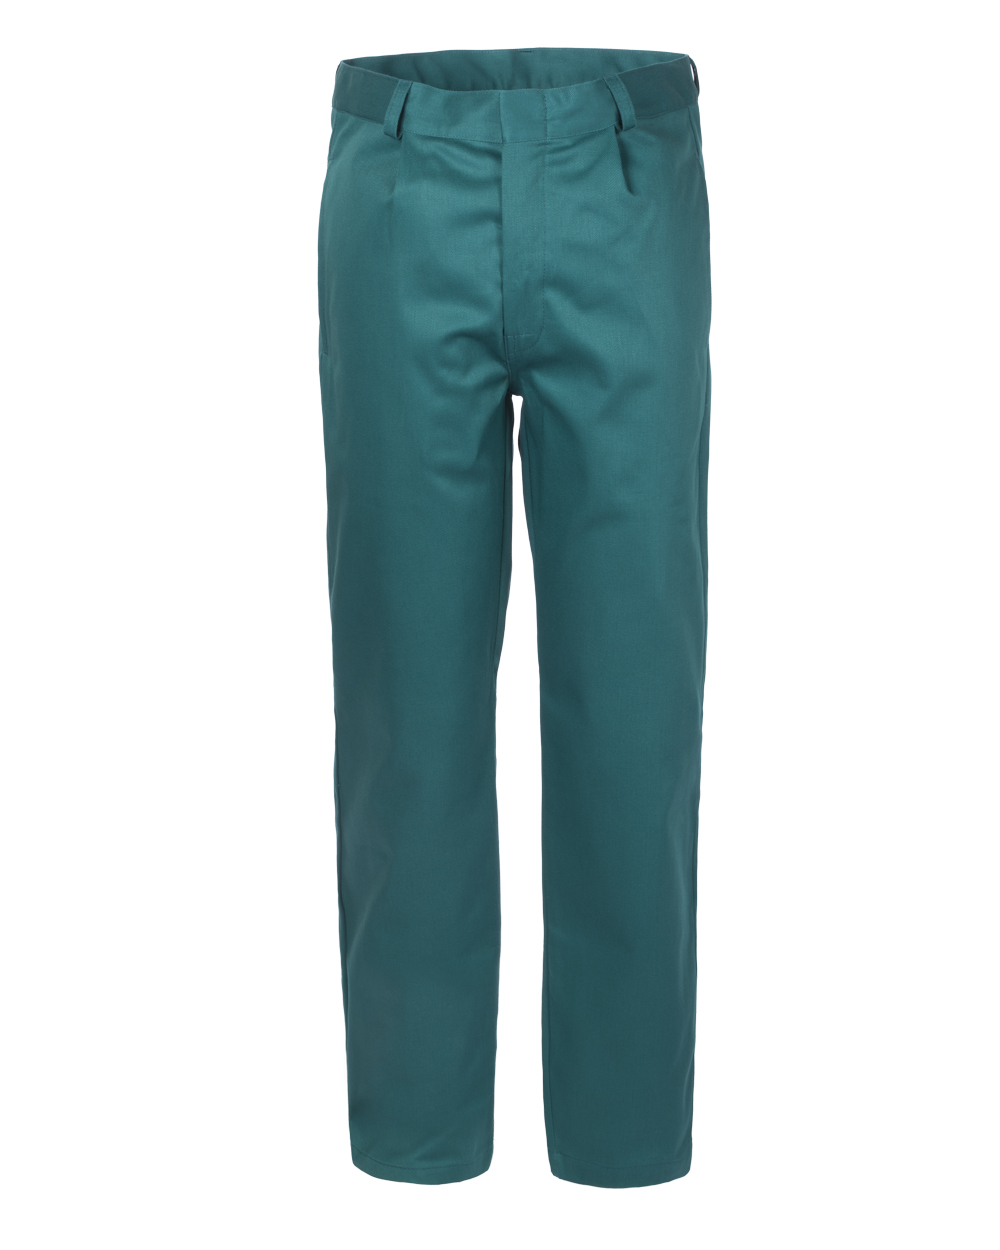 Pantalone Flammatex verde